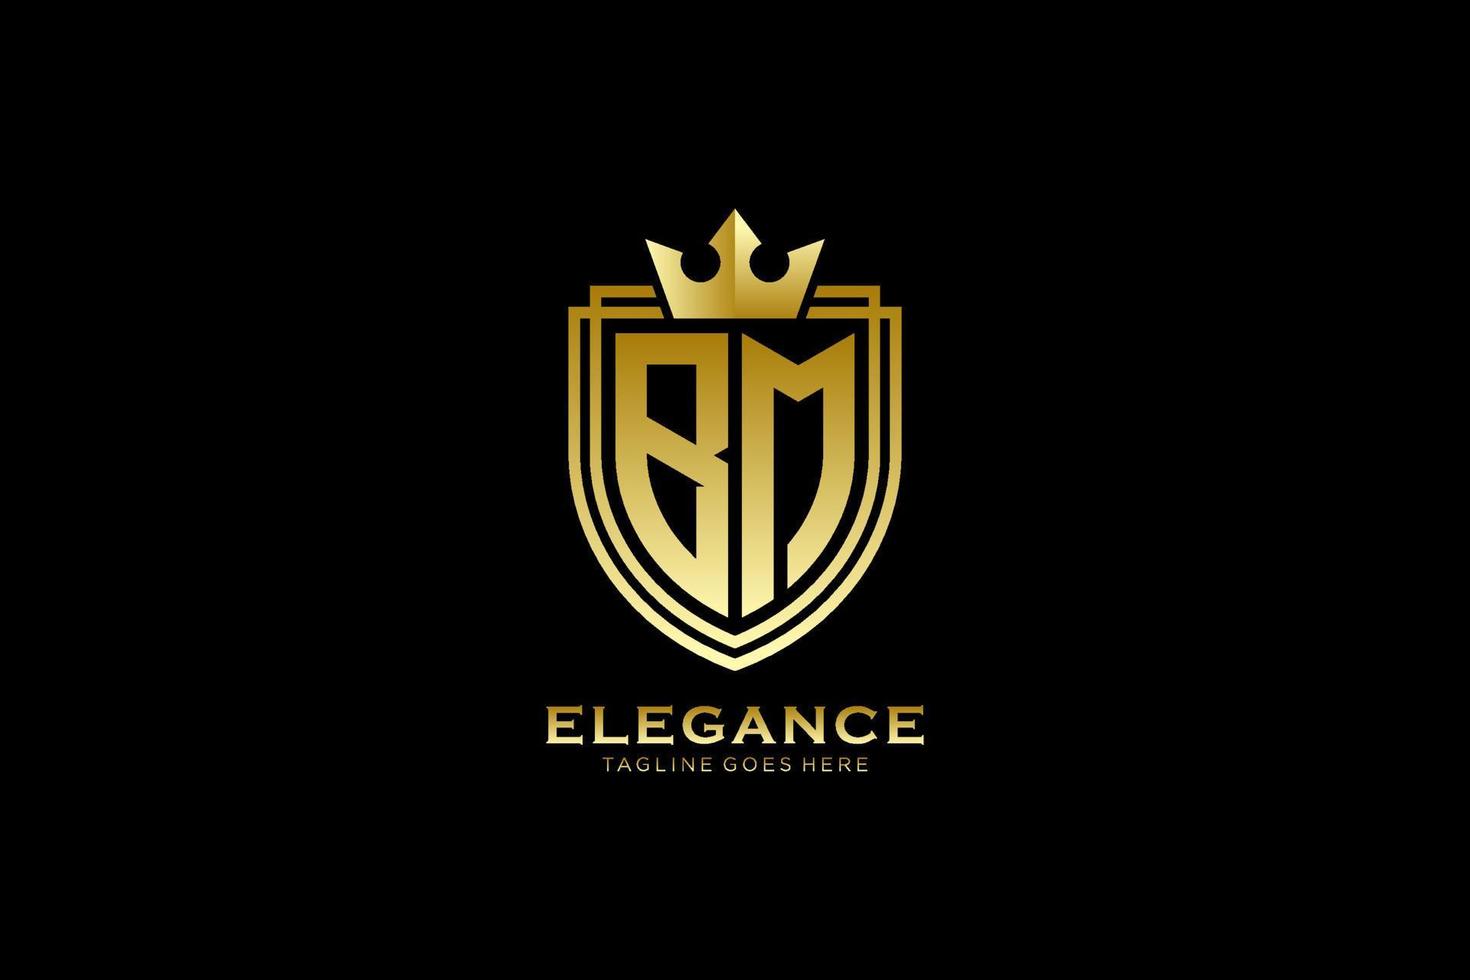 logo monogramme de luxe élégant initial bm ou modèle de badge avec volutes et couronne royale - parfait pour les projets de marque de luxe vecteur